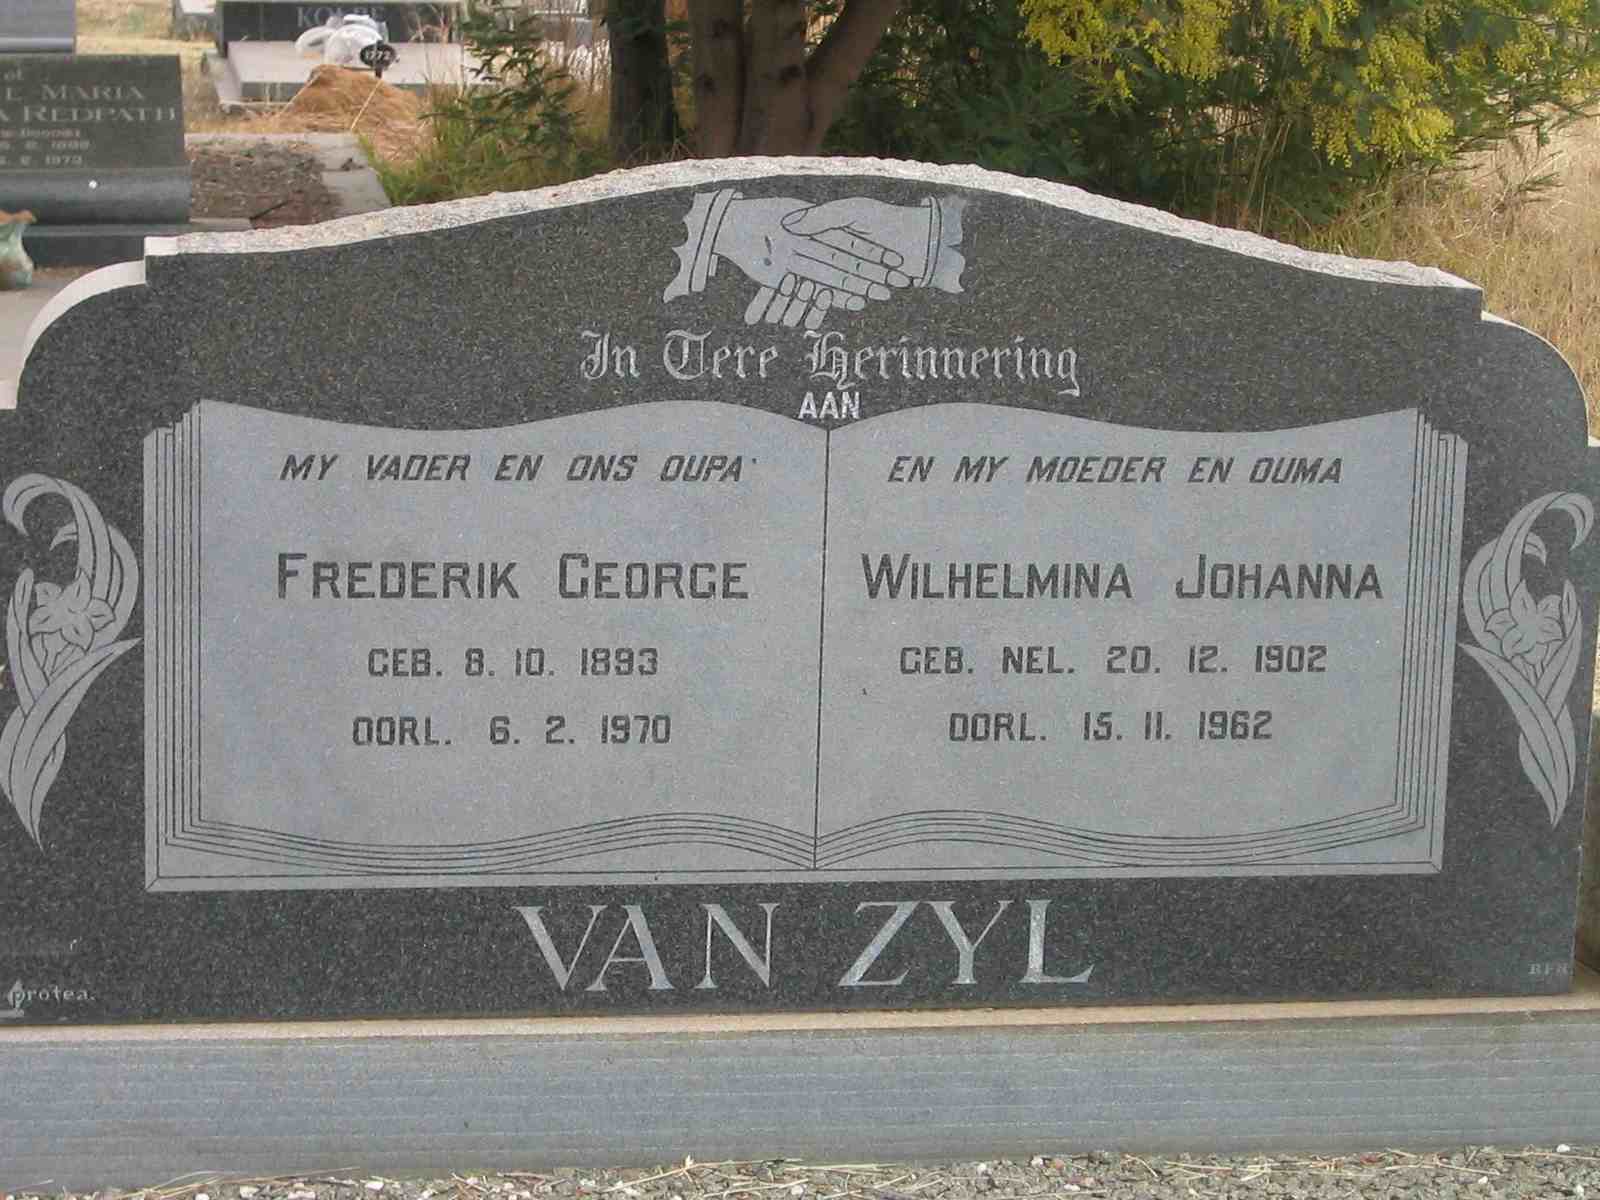 ZYL Frederik George, van 1893-1970 &  Wilhelmina Johanna NEL 1902-1962